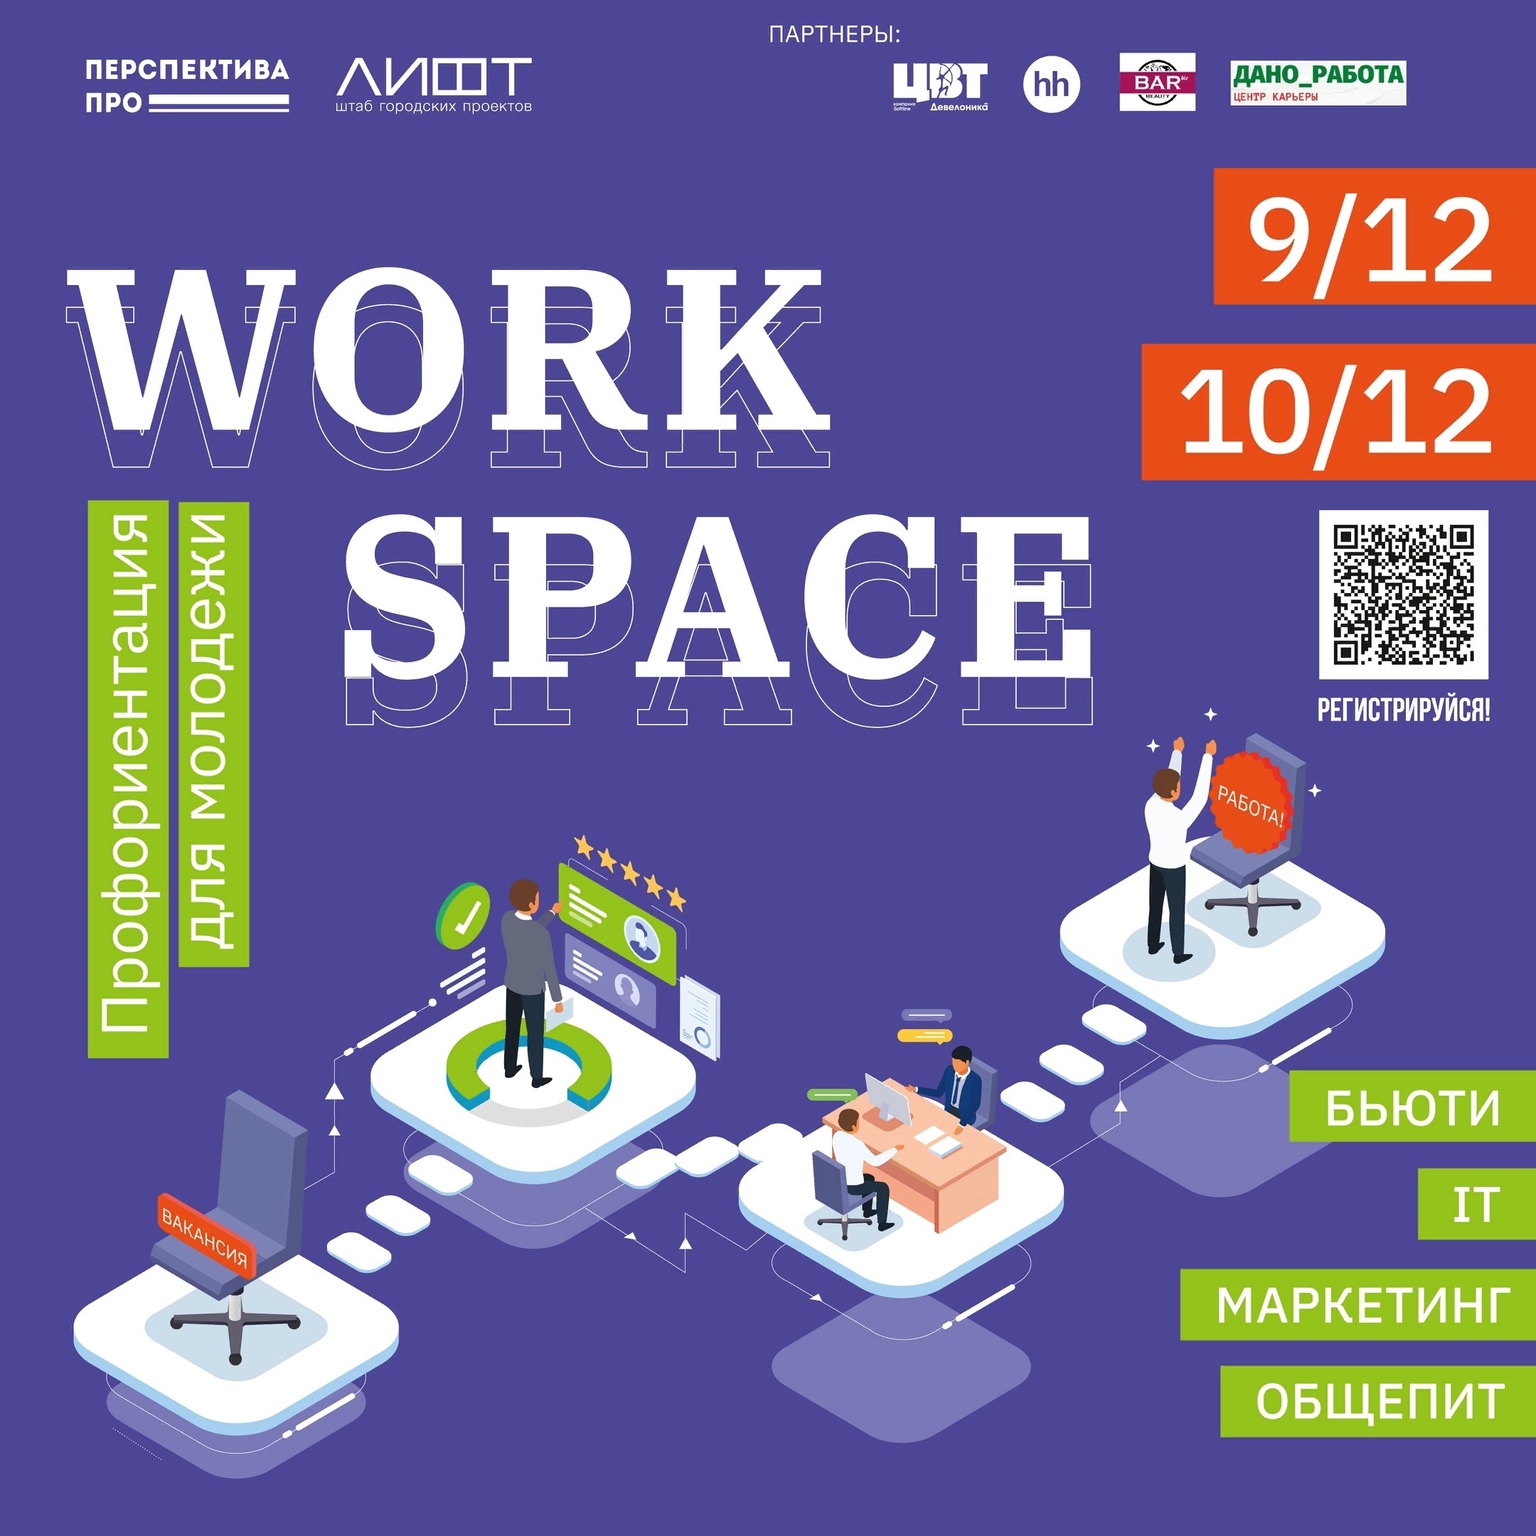 Программа Work space